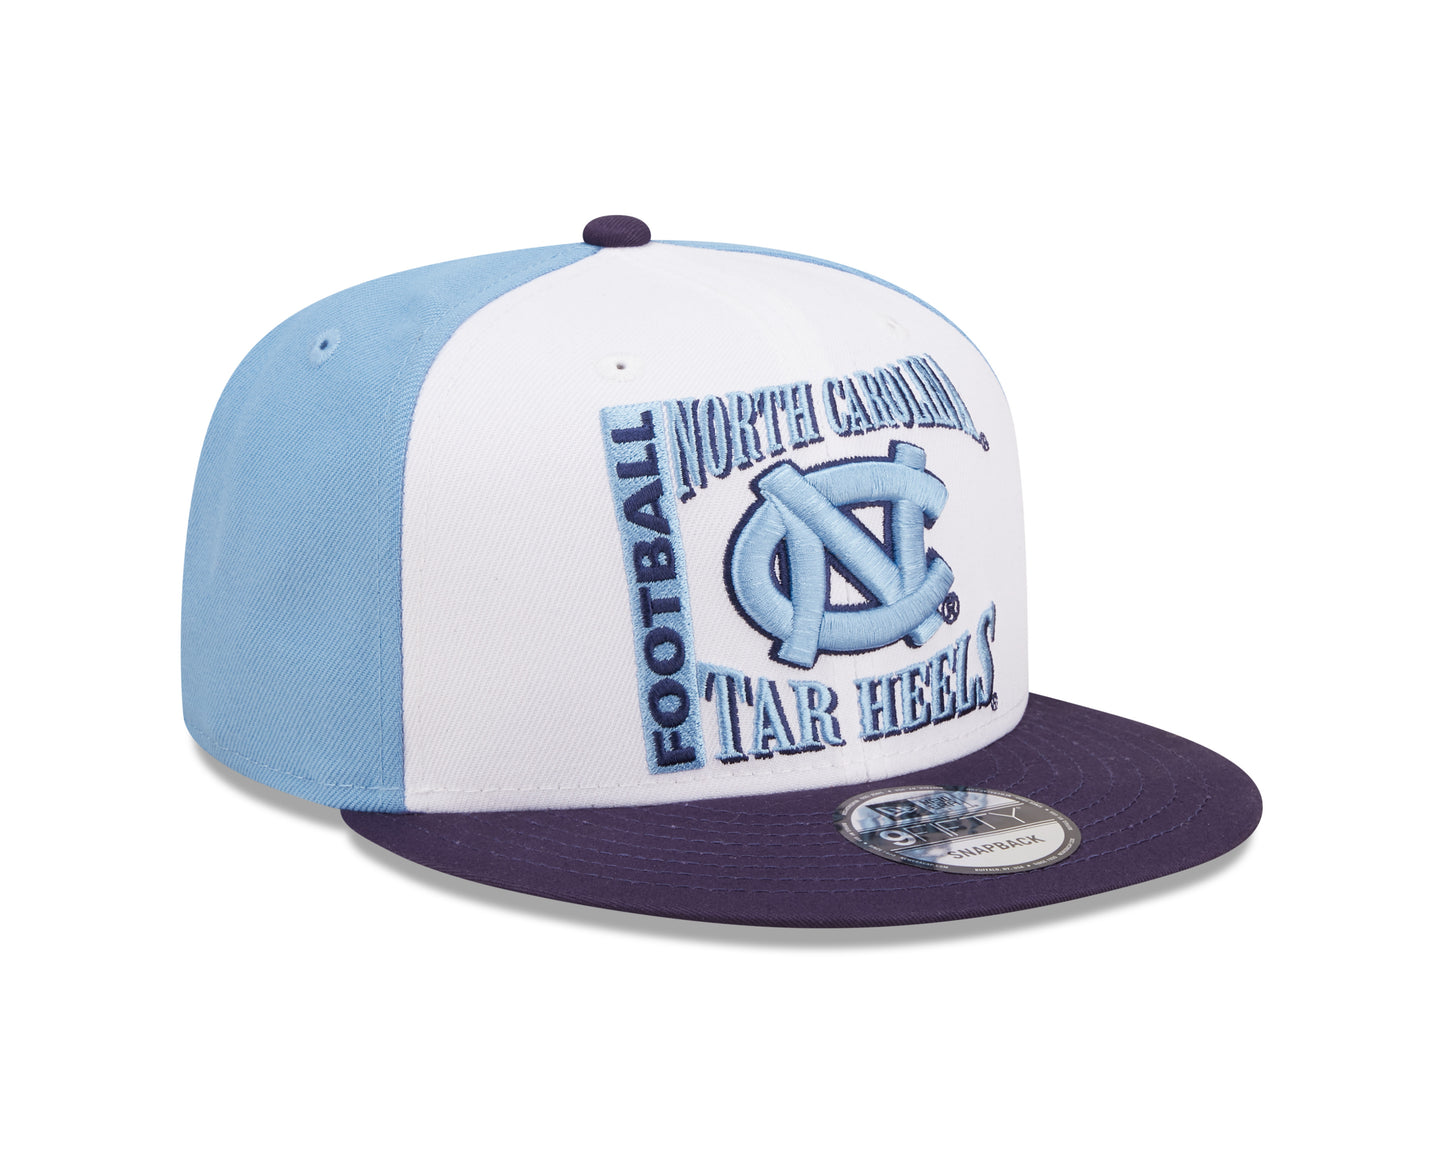 North Carolina Tar Heels Football Retro Sport 3 Tone New Era 9FIFTY Snapback Hat